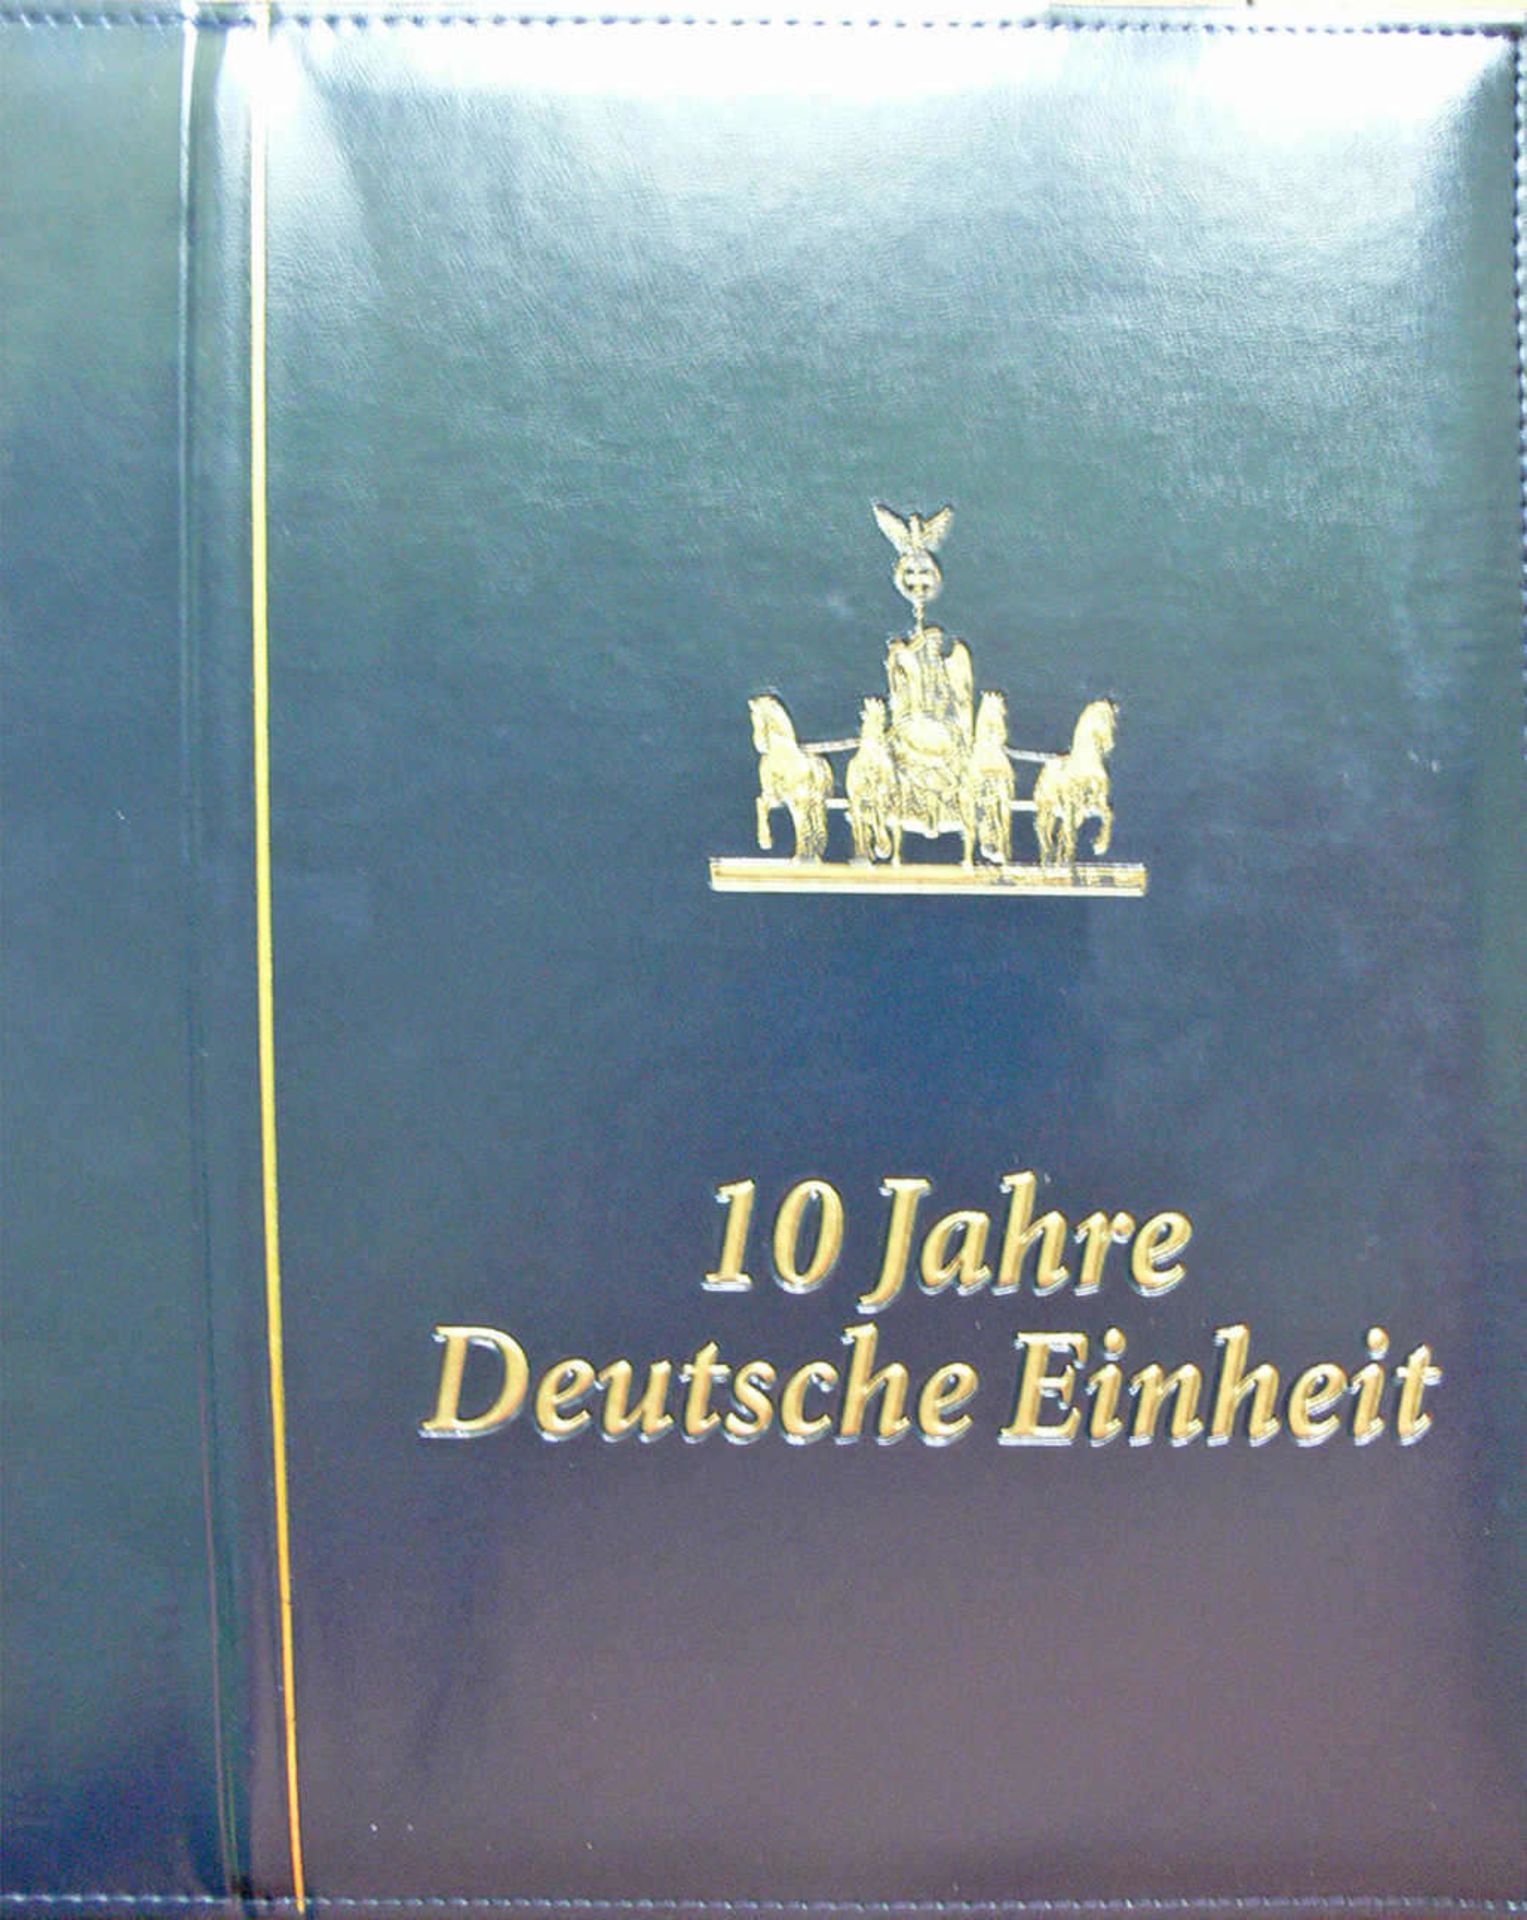 BRD, zwei Abo - Alben: 1. Atelier Edition 2002. 2. 10 Jahre deutsche Einheit. Germany, two - Image 6 of 8